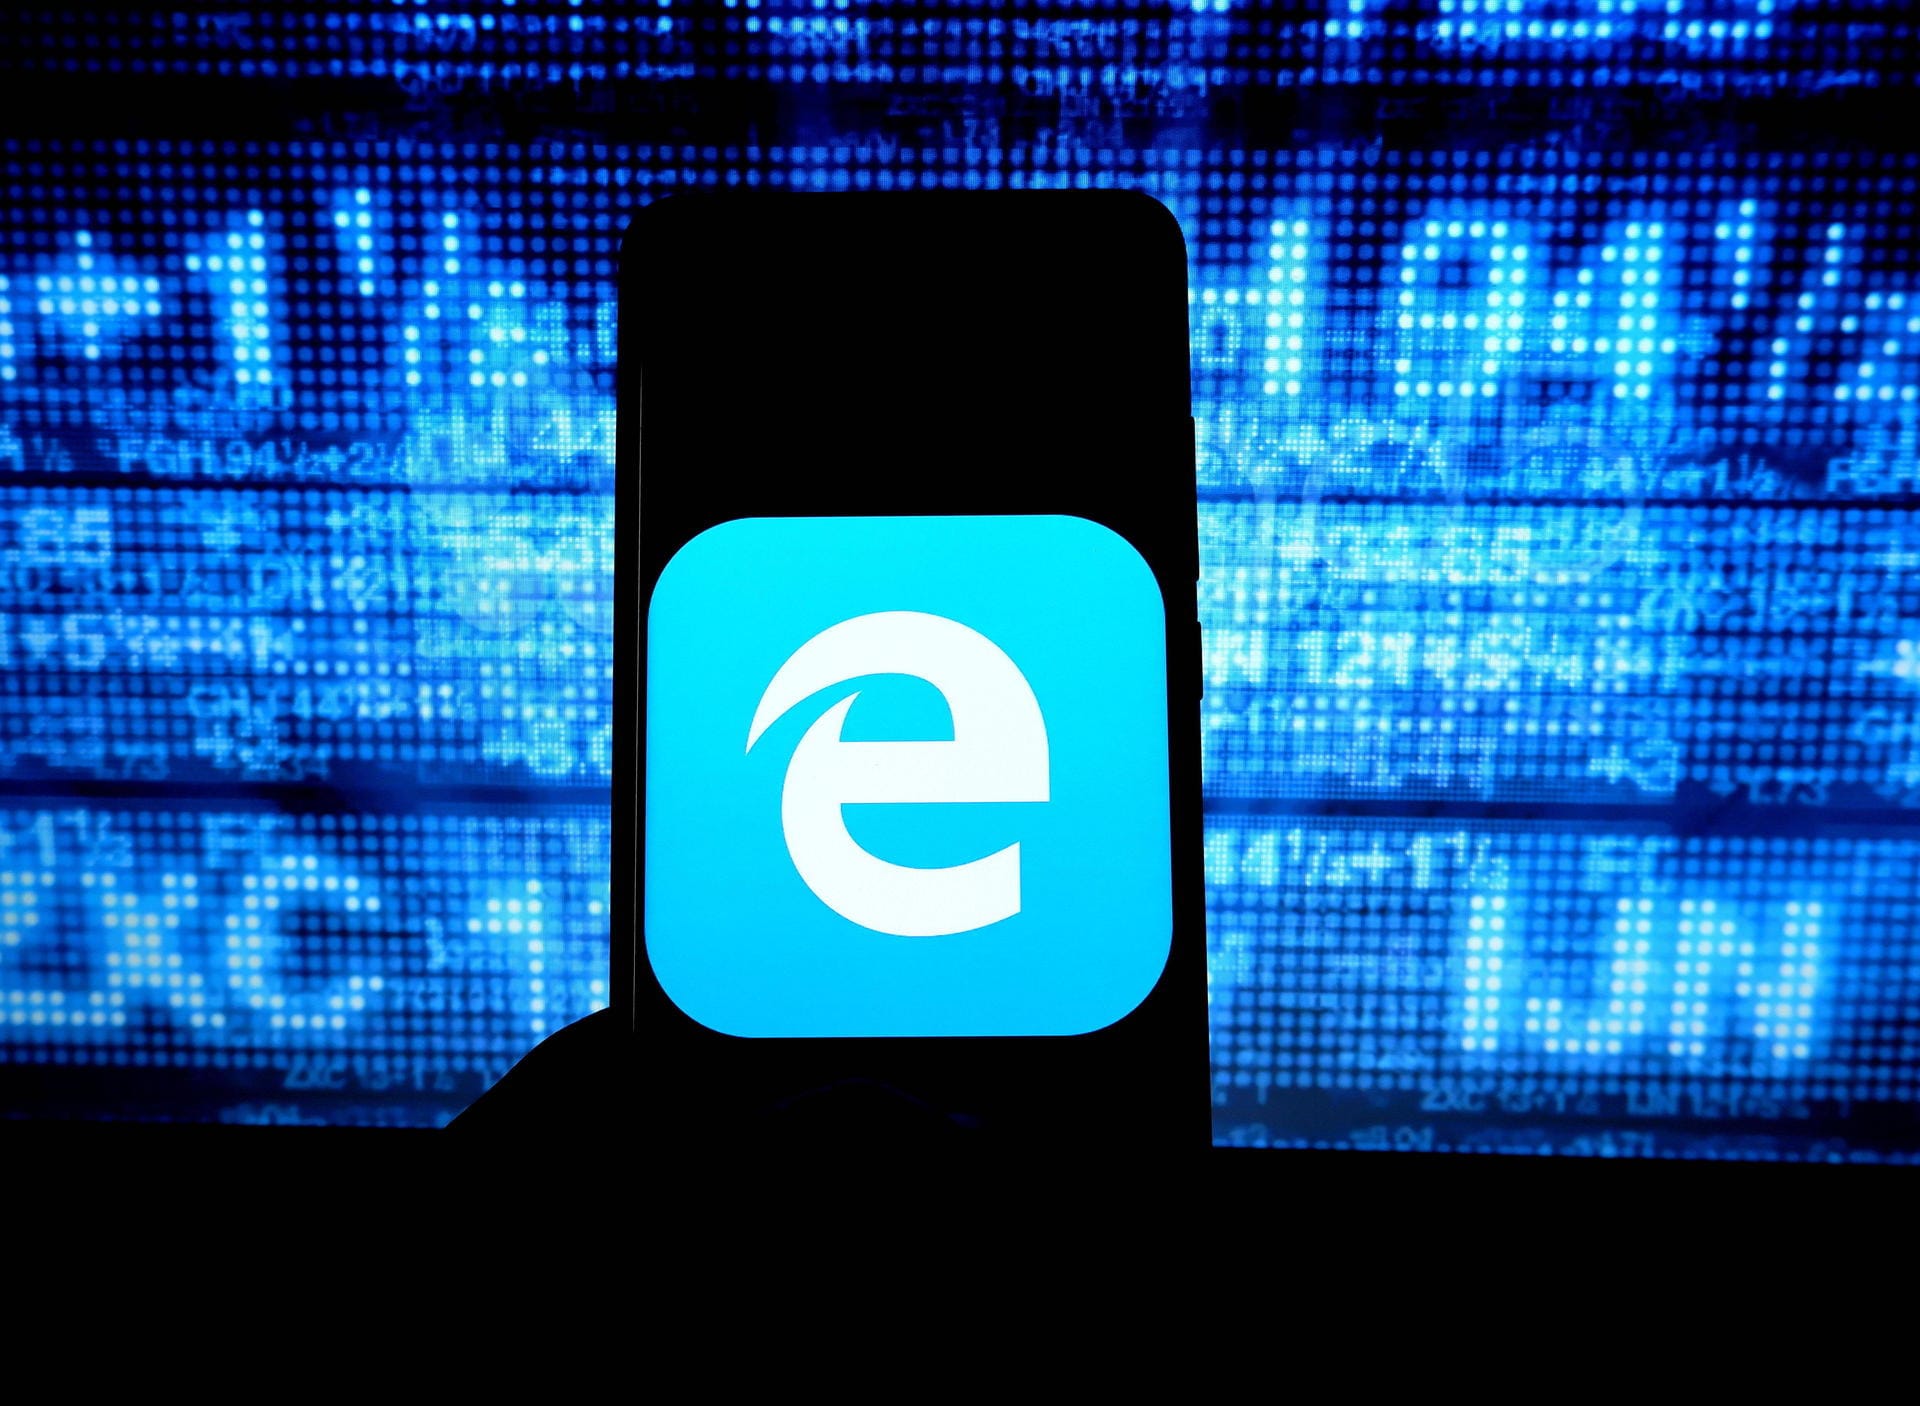 Der Edge-Browser ist auf den meisten Windows-Rechnern vorinstalliert. Früher gab es den Internet Explorer. Der wird jedoch nicht mehr weiterentwickelt und gilt als unsicher. Diesen Browser sollten Sie nicht mehr verwenden.